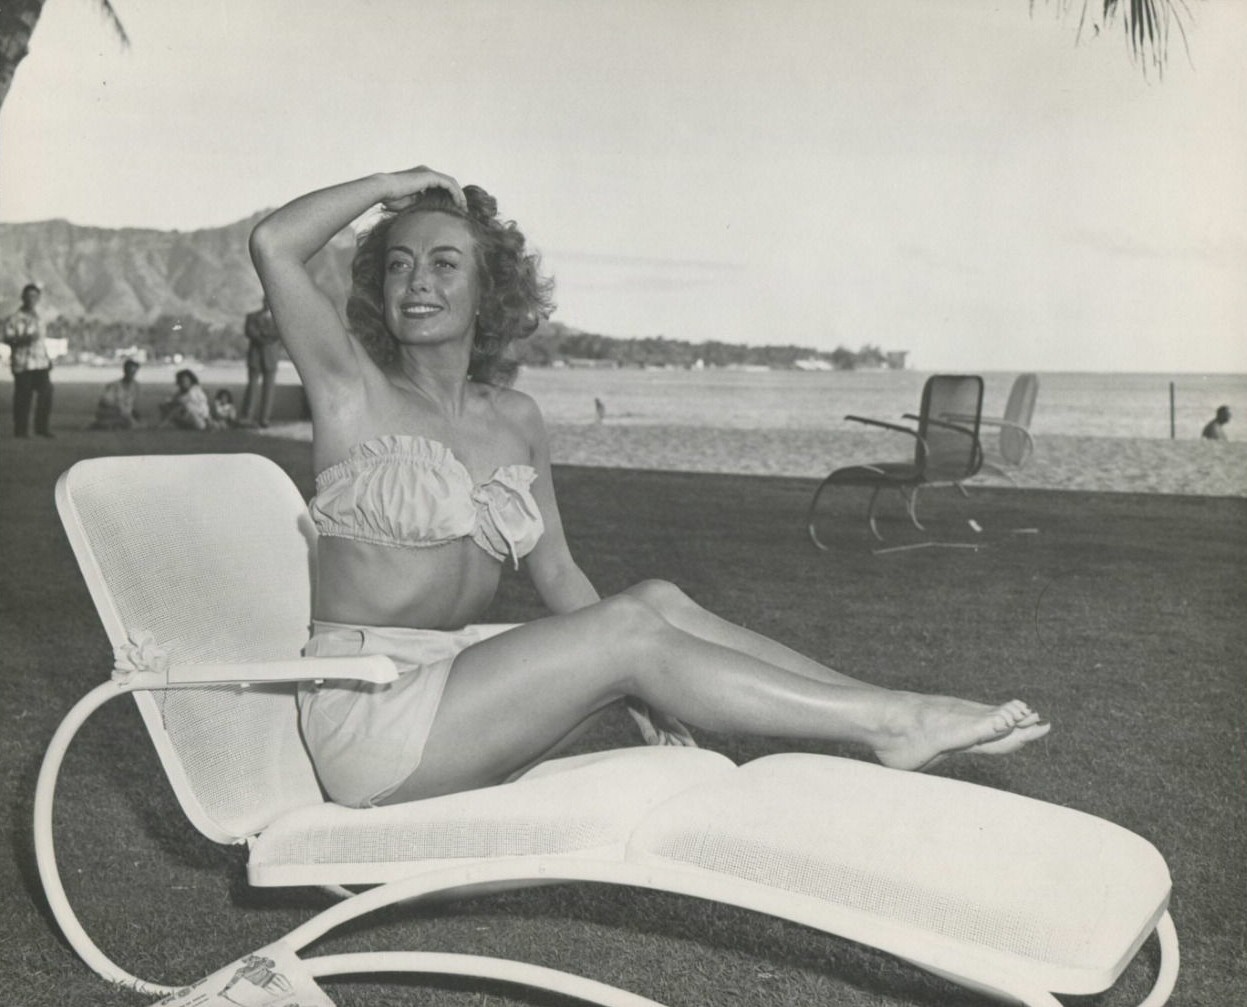 1946 at Waikiki Beach in Hawaii.